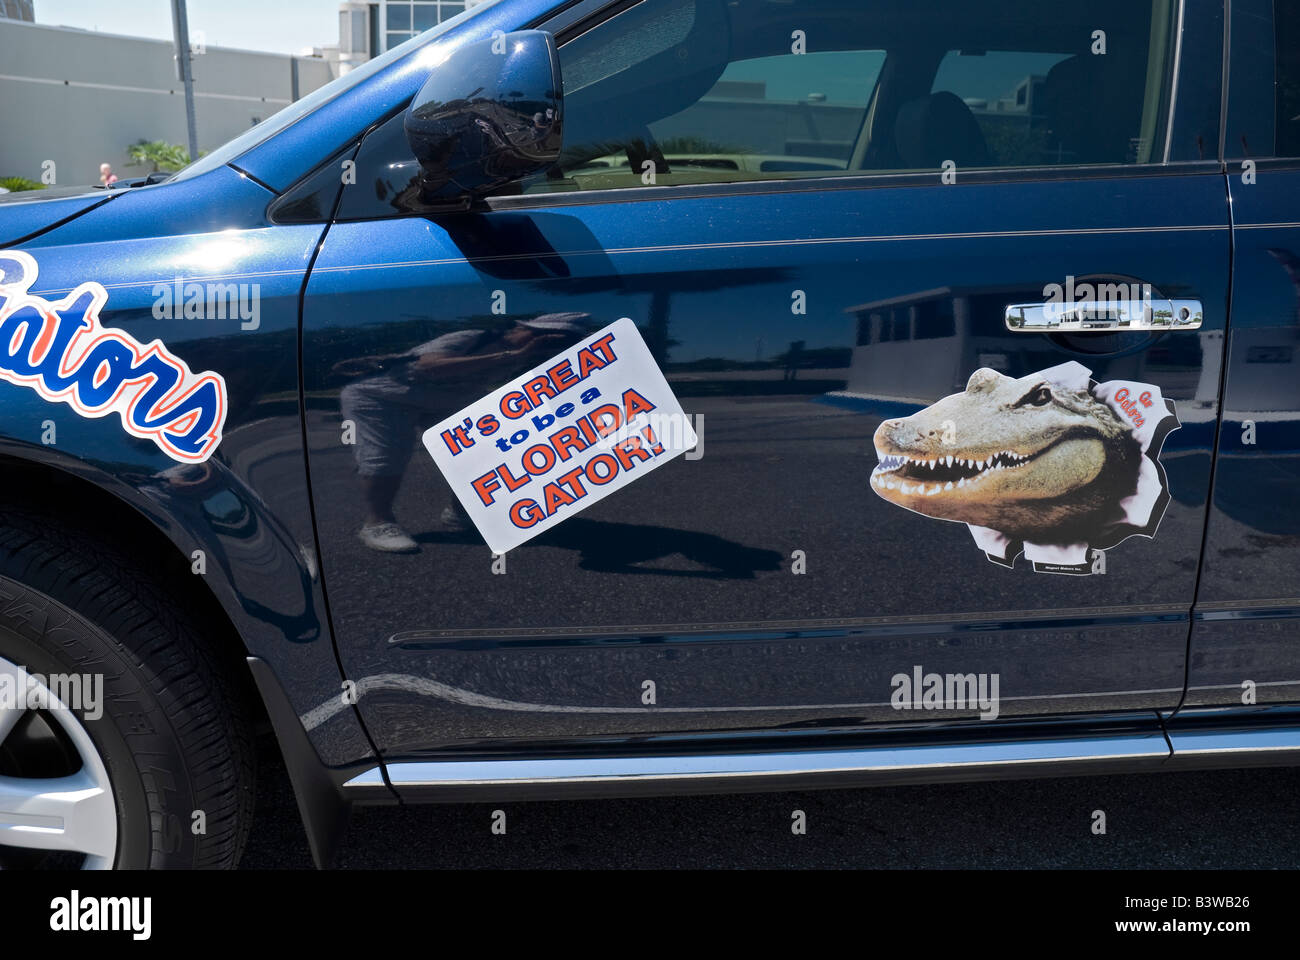 Vehicle decorated with University of Florida Gator symbols Gainesville Florida Stock Photo